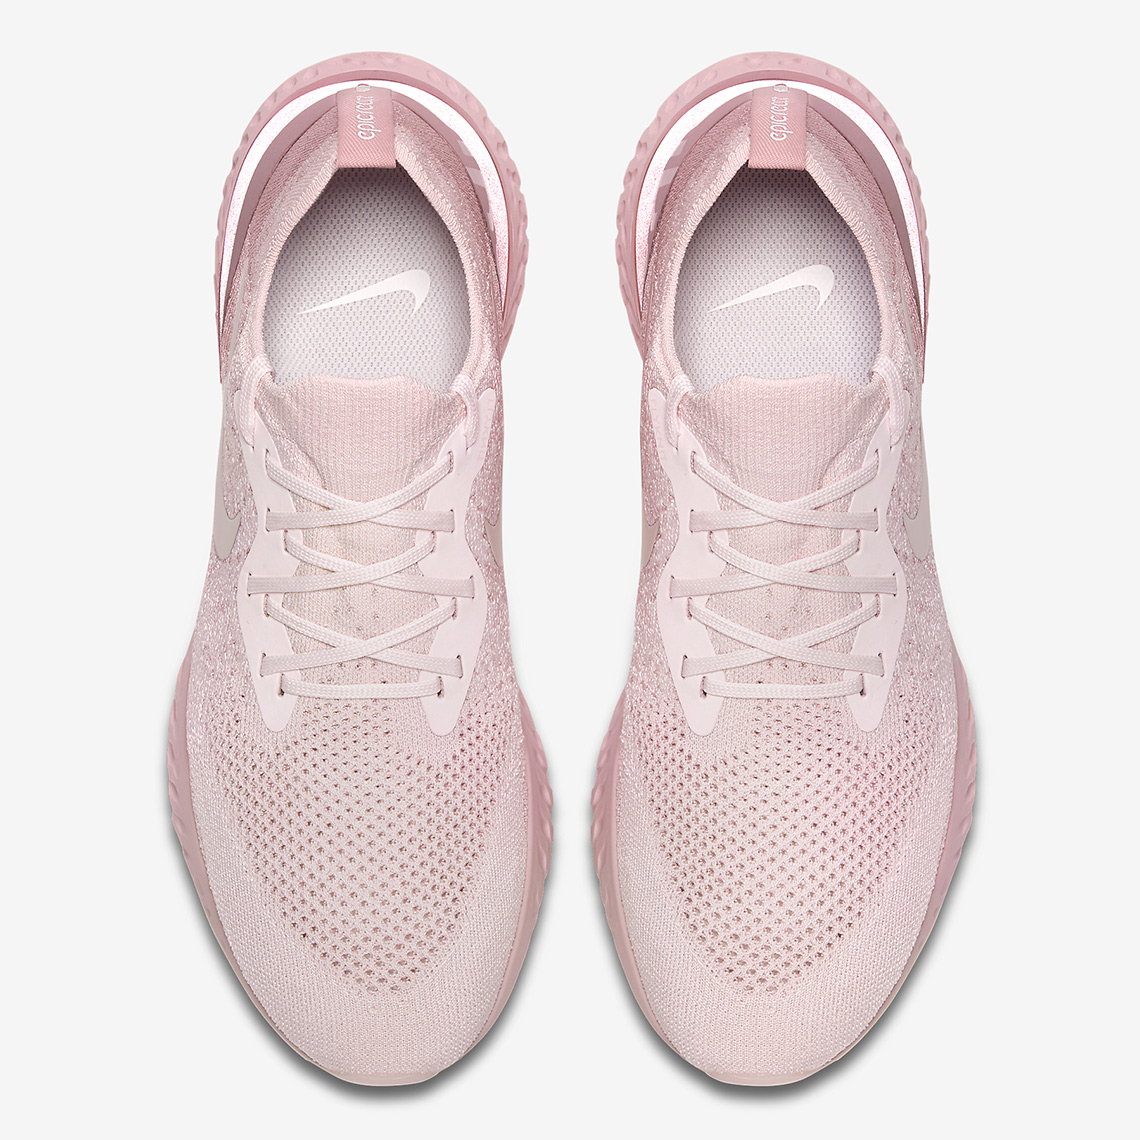 Nike Epic React Flyknit Pear Pink Release Info 2